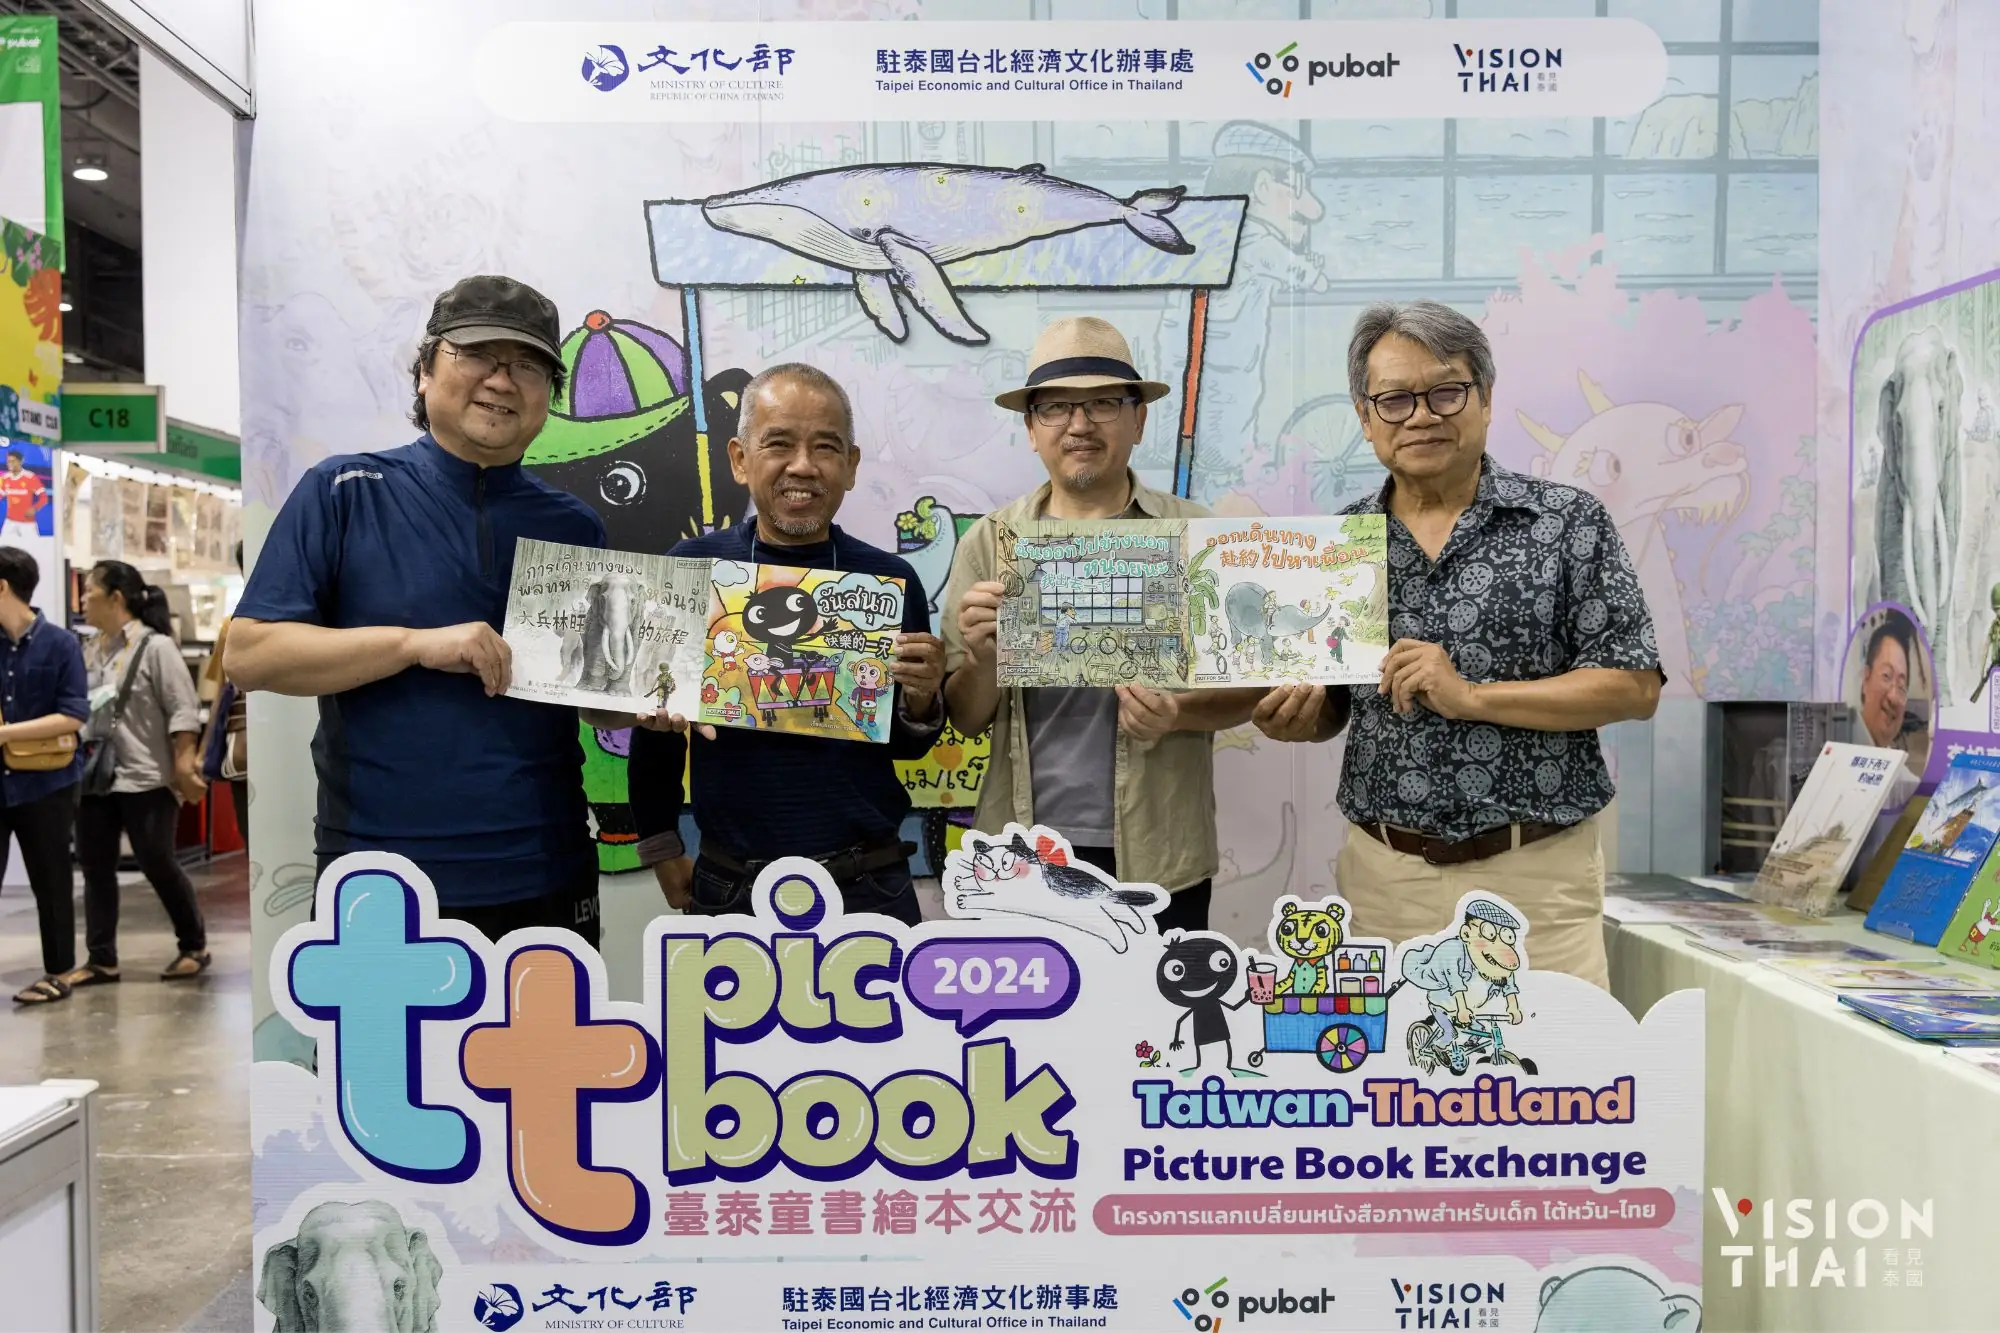 （左起）繪本作家李如青、奇玩（Cheewan Wisasa）、嚴凱信、皮達（Preeda Punyachand）持臺泰共創作品雙封面合影。（來源：看見泰國 Vision Thai）